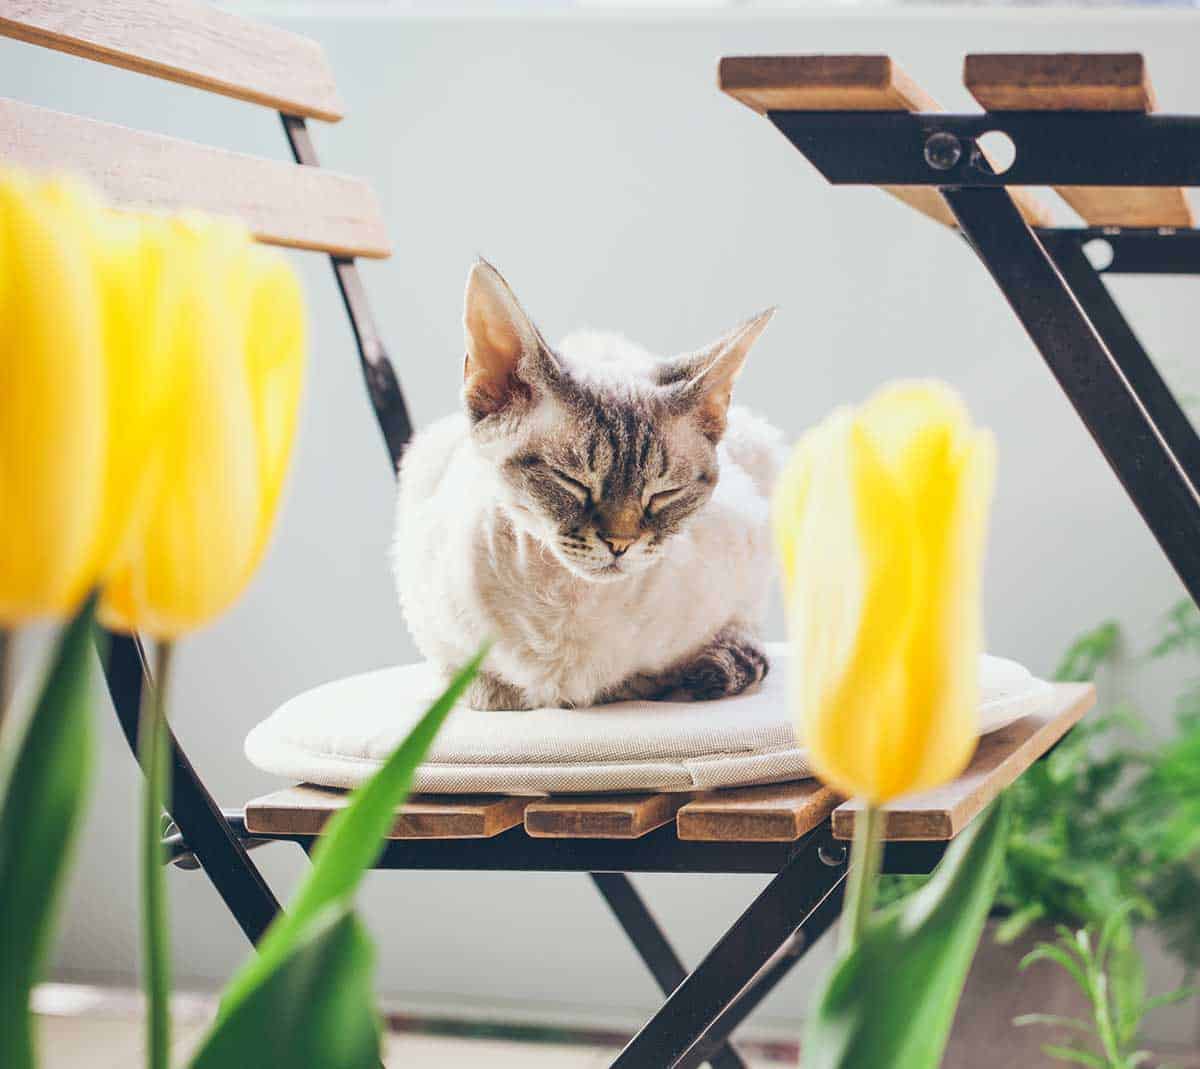 A cat in a garden